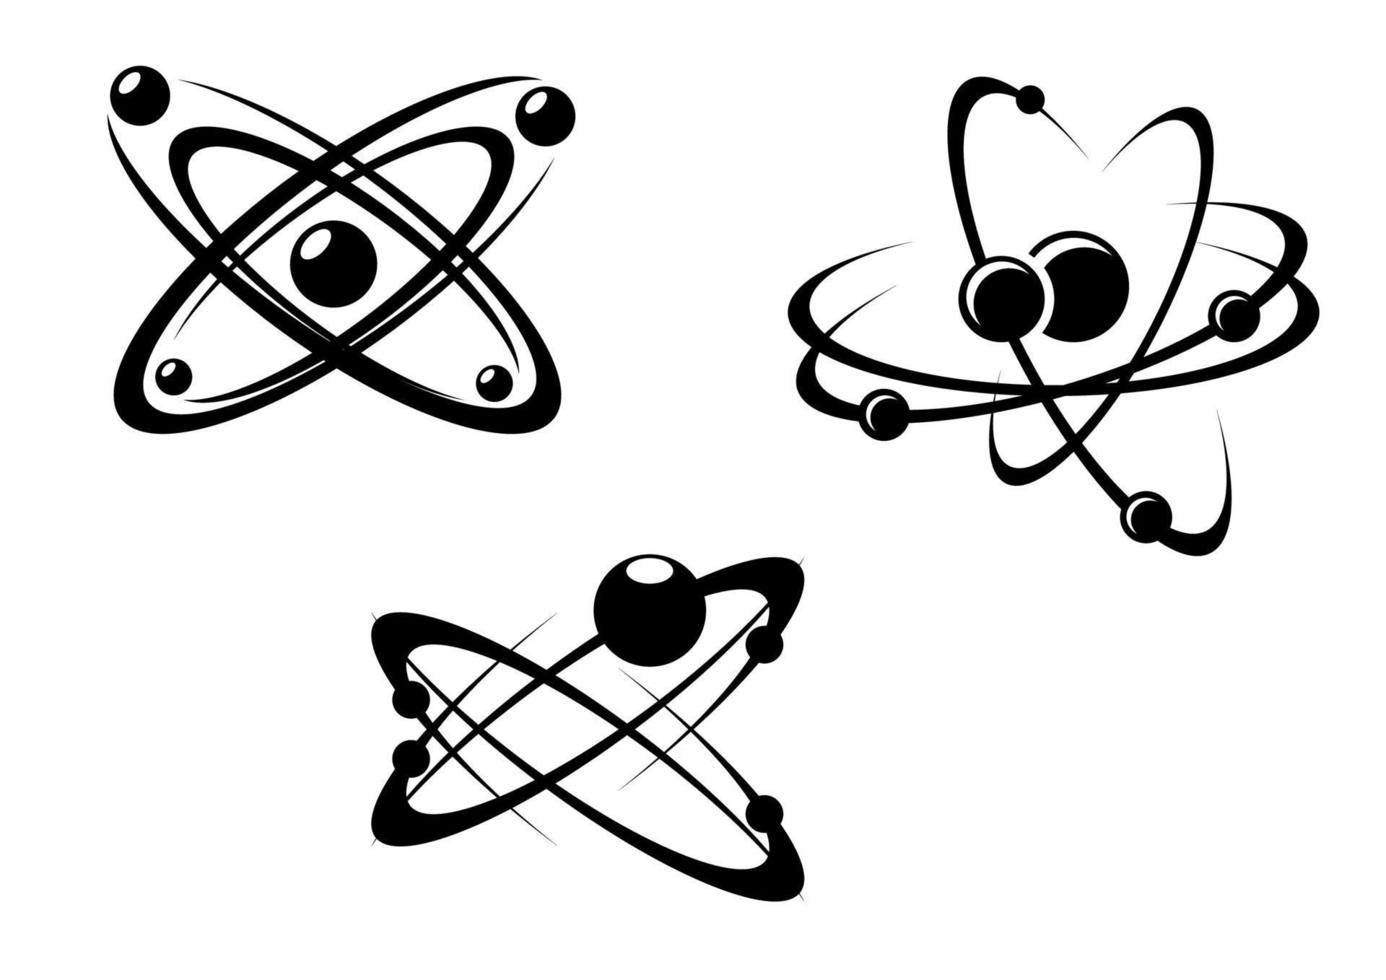 Science atom symbols vector